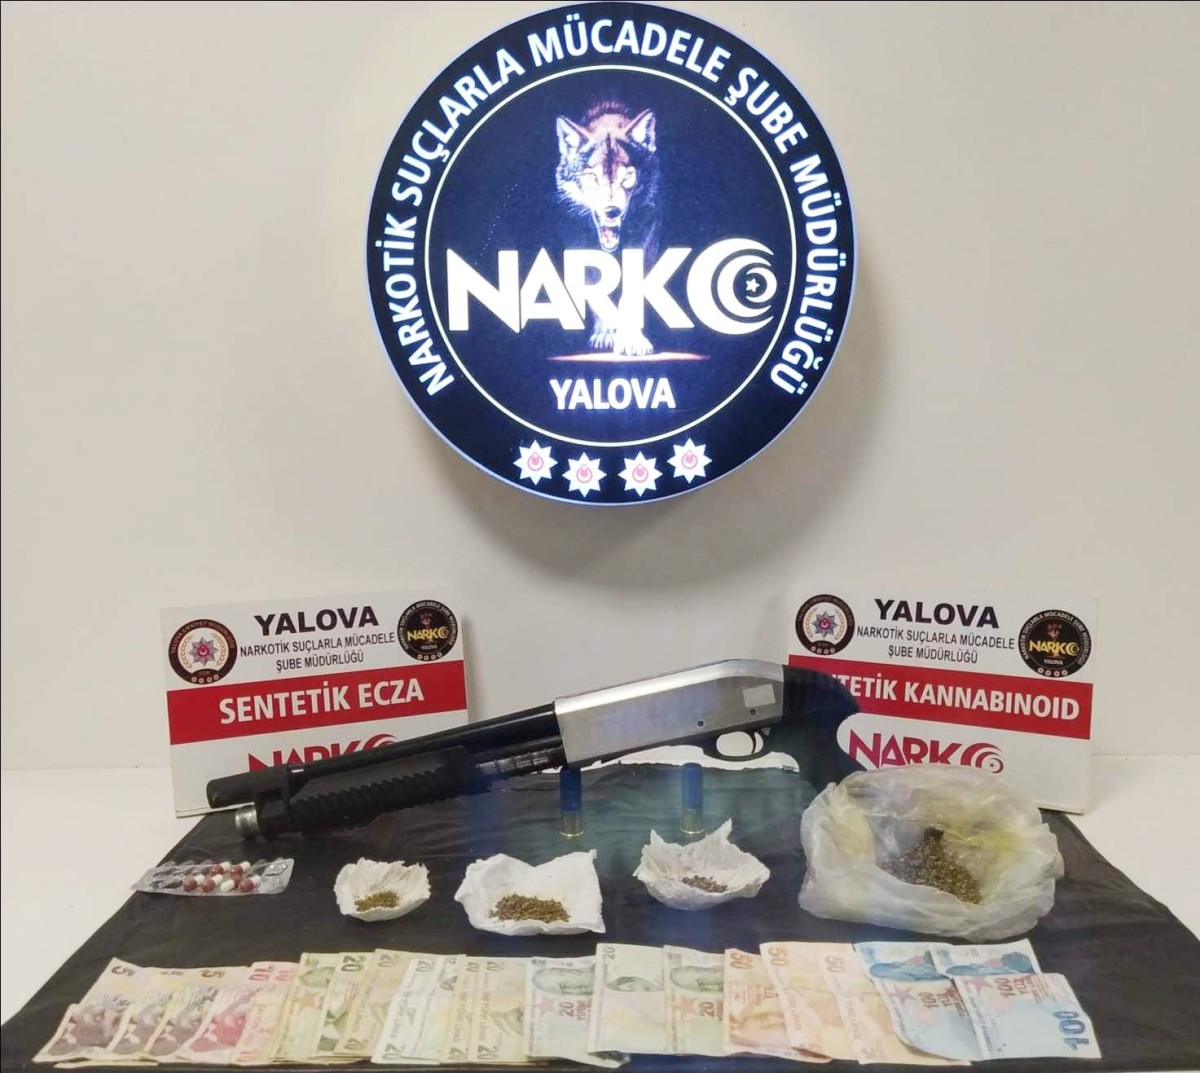 Yalova'da polis ekipleri tarafından gerçekleştirilen uyuşturucu operasyonlarında 3 ayrı olayda toplam 4 şüpheli yakalandı. 